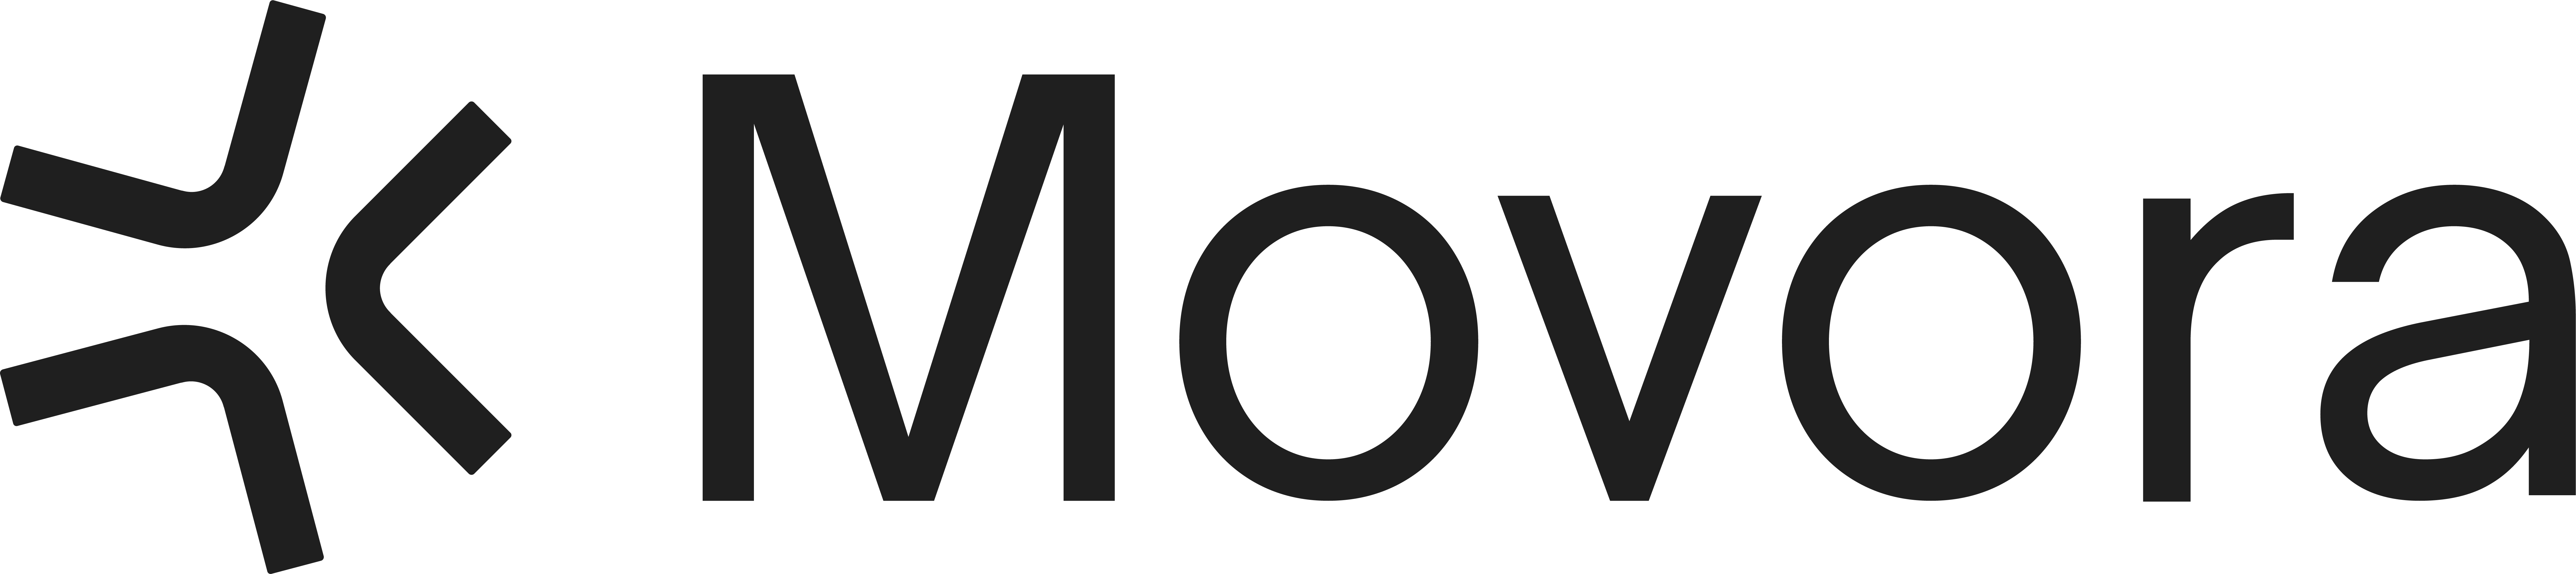 Movora logo